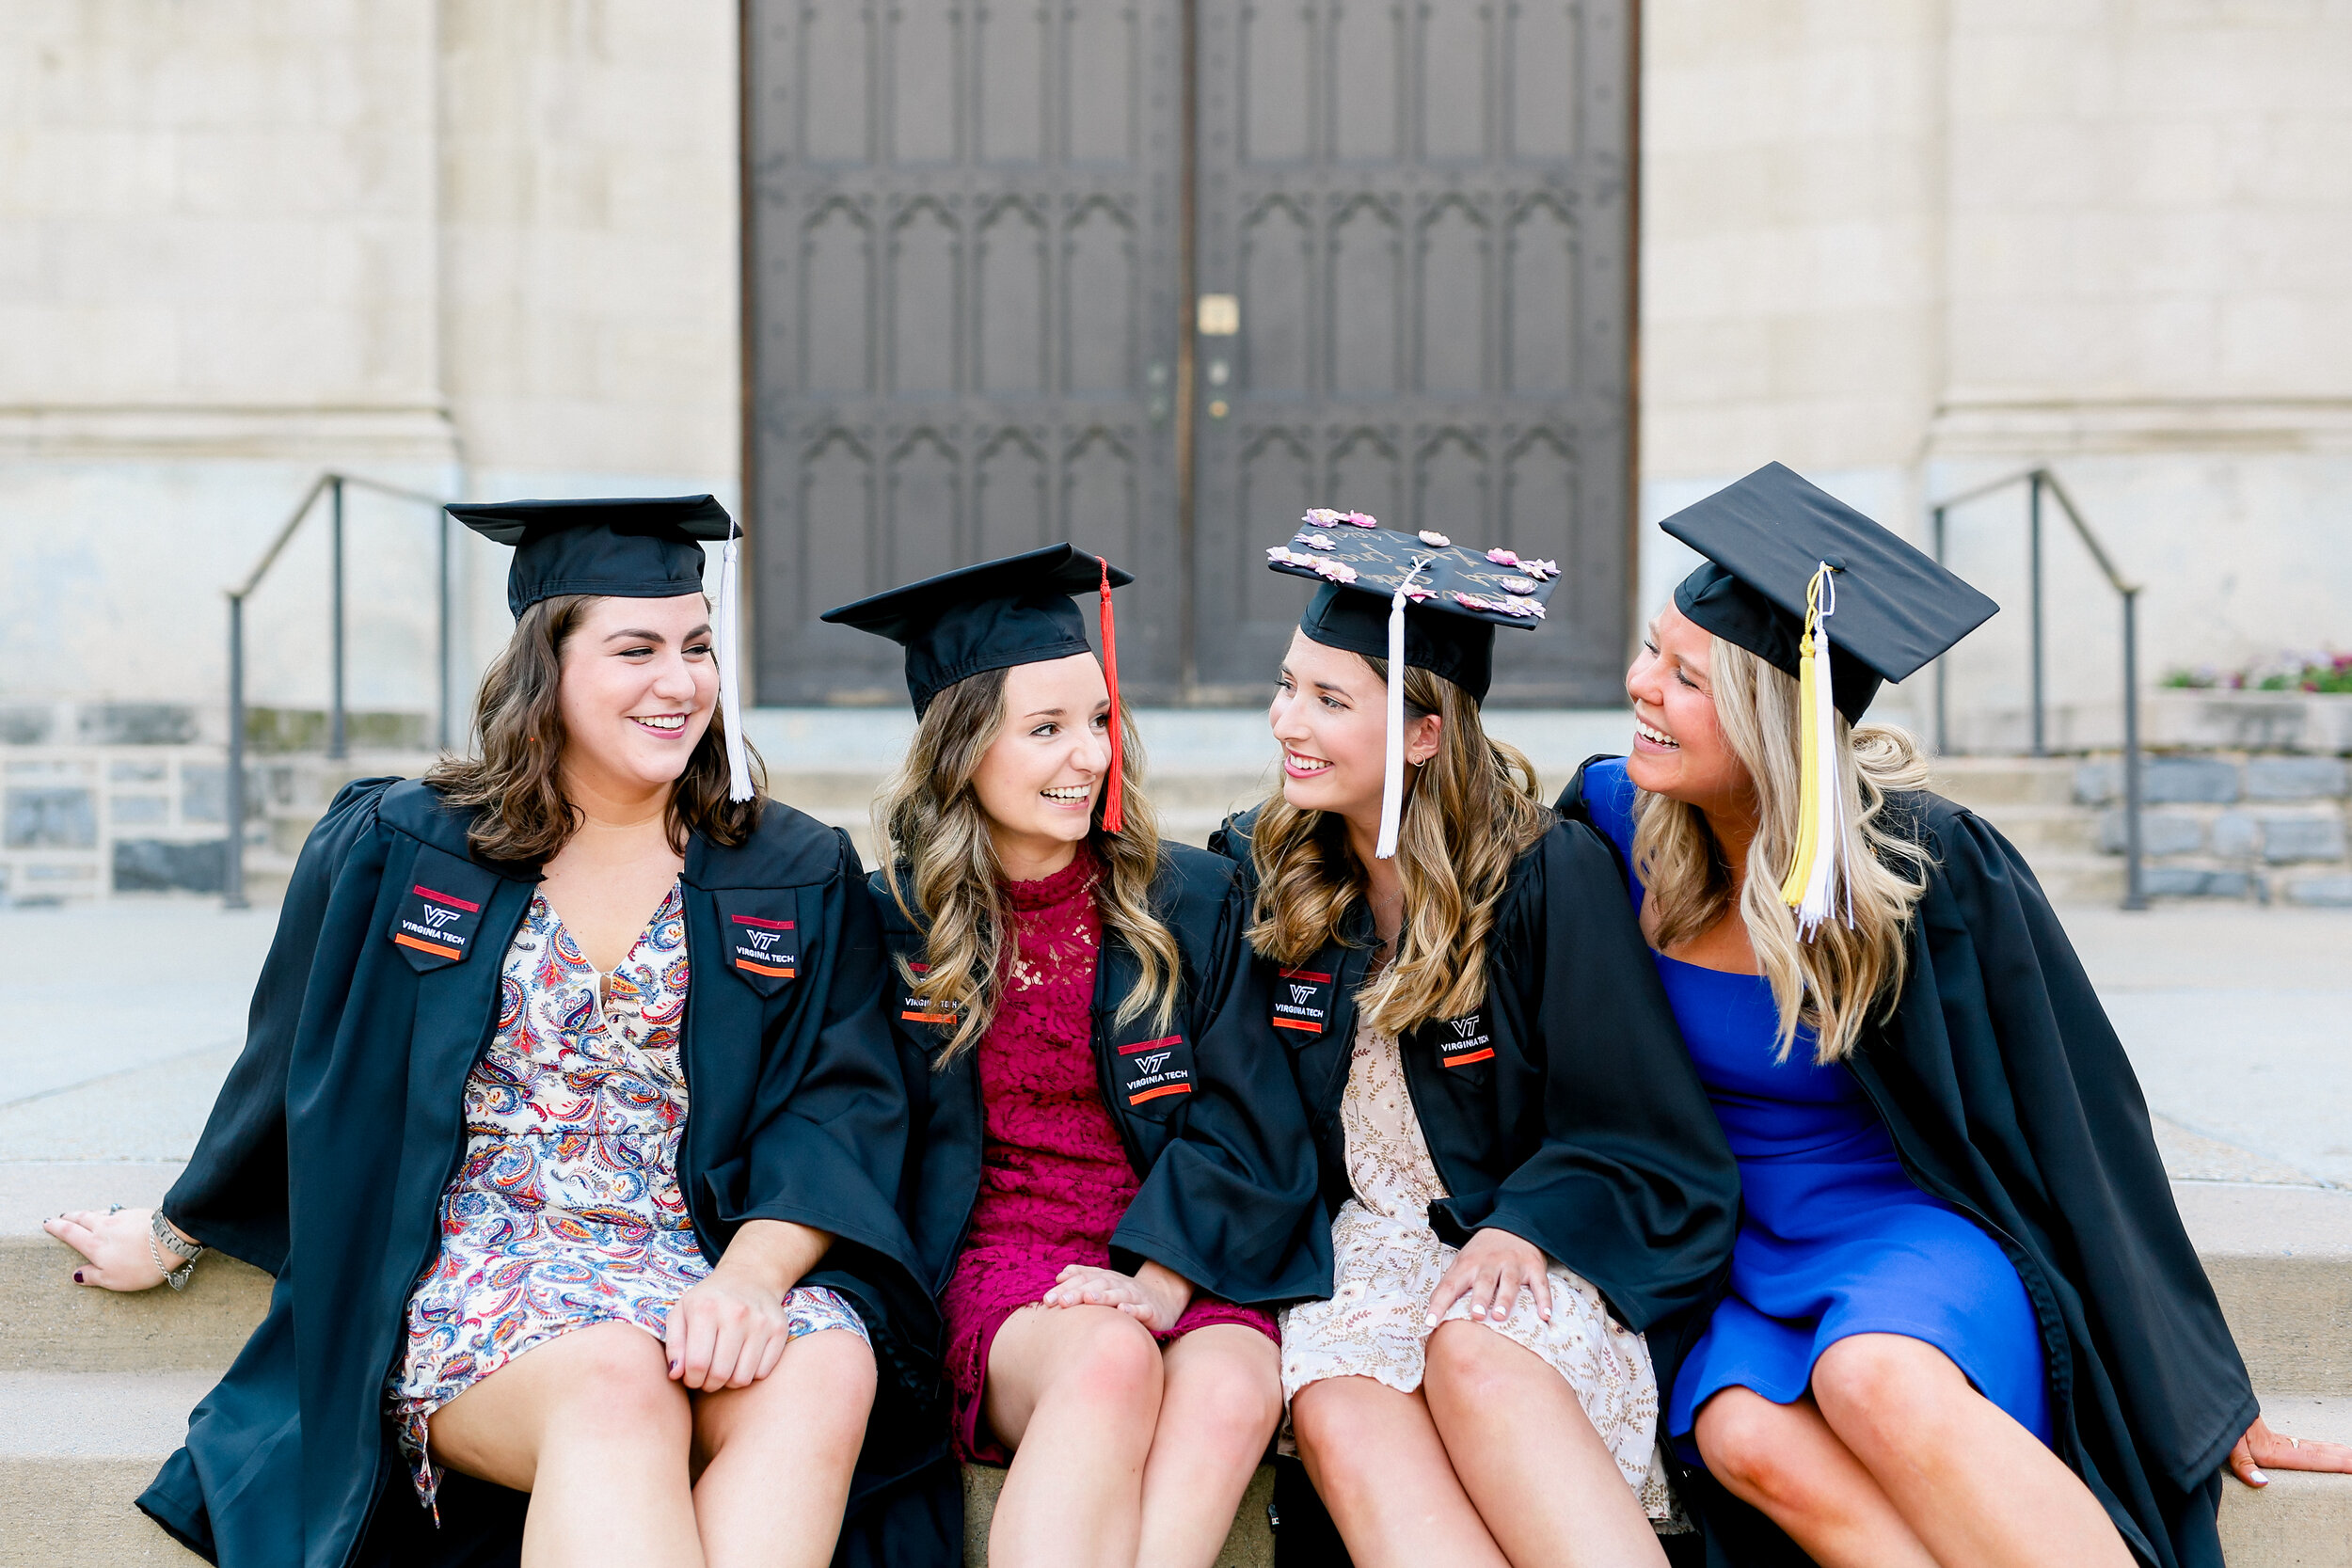 Group graduation senior pictures in Blacksburg, VA at Virginia Tech’s beautiful campus.